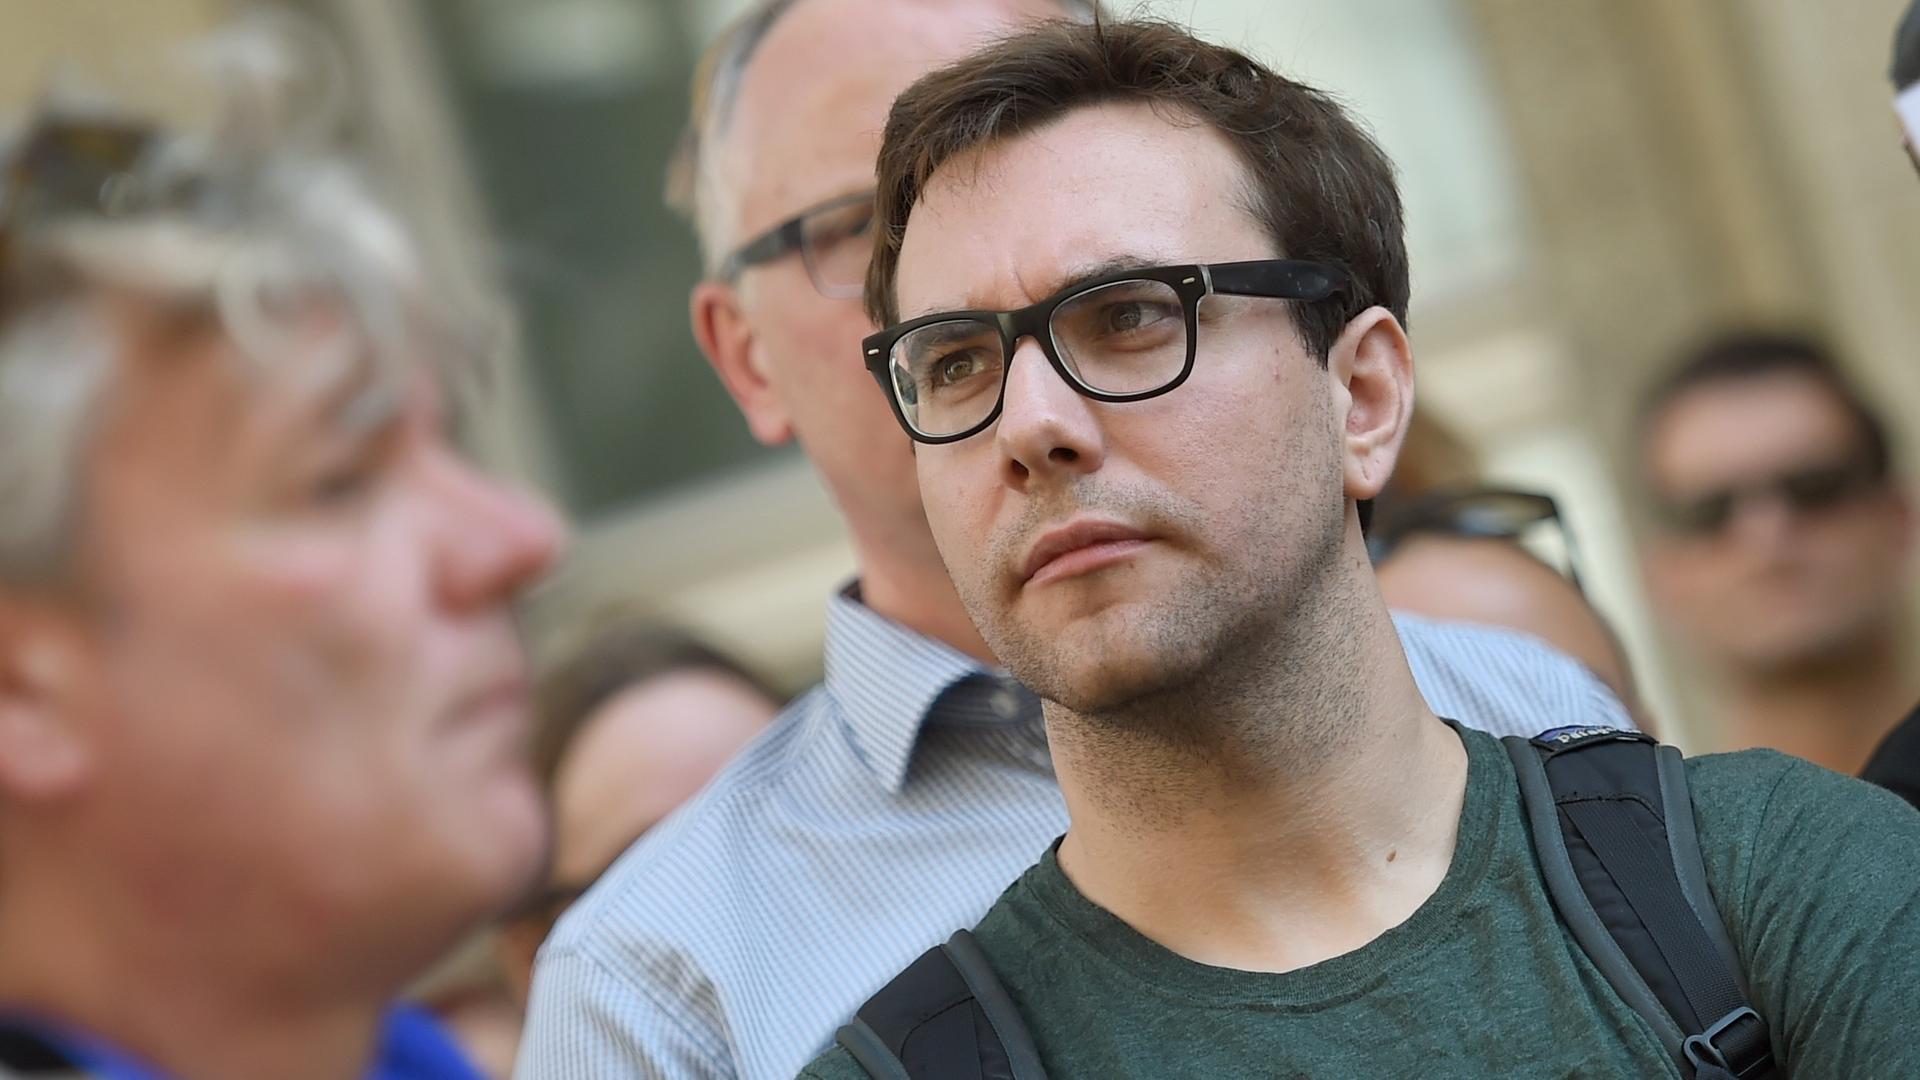 Der US-amerikanische Internetaktivist Jacob Appelbaum nimmt am 01.08.2015 in Berlin bei der Demonstration von Internetaktivisten für Pressefreiheit im Zusammenhang mit dem Vorwurf des Landesverrats der Journalisten des Bloggs netzpolitik.org teil.